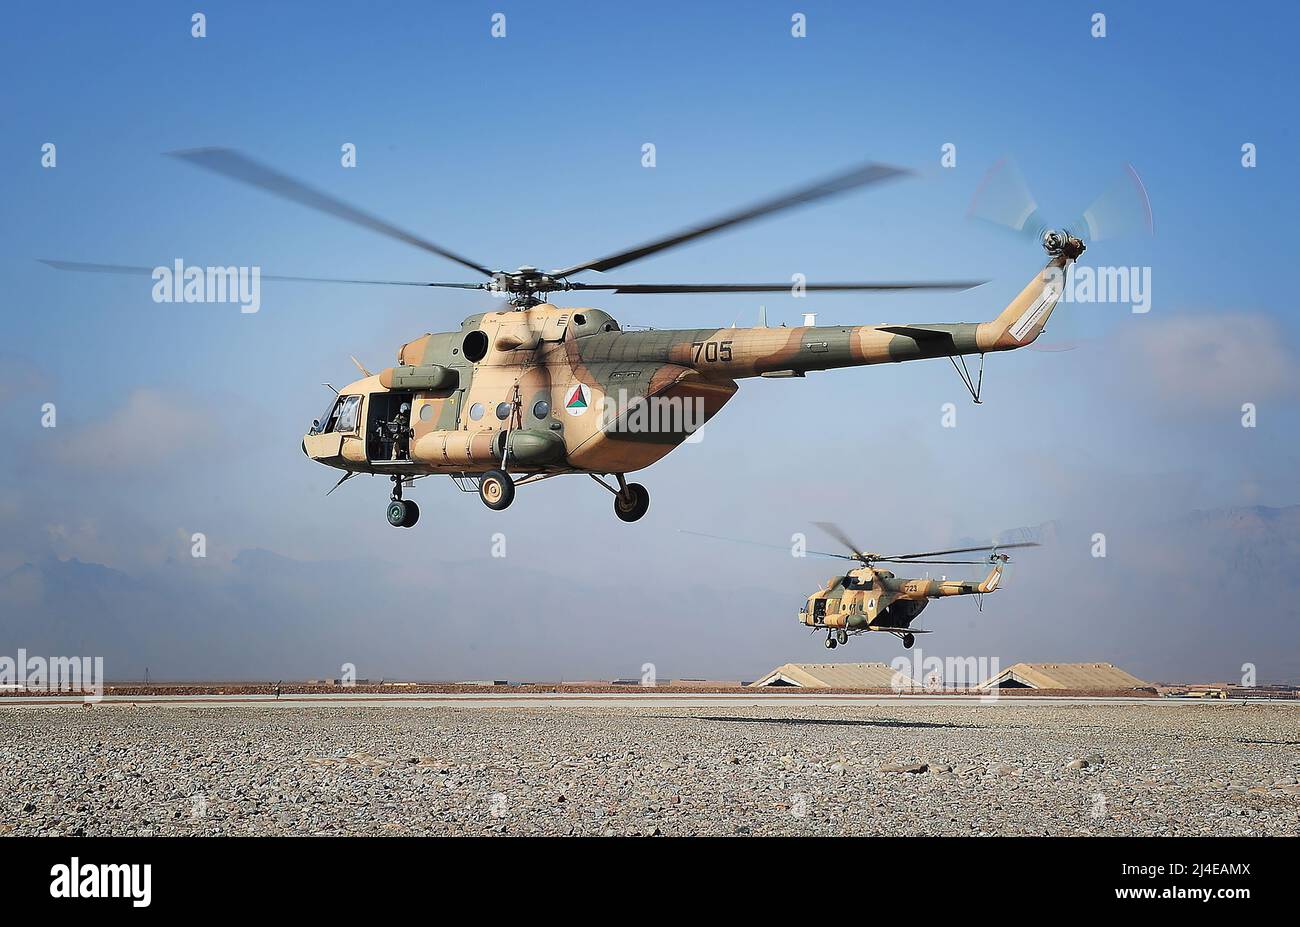 Gli elicotteri mi-17 operati dall'Ala 2nd dell'Aeronautica militare Nazionale afghana decollano alla base multinazionale Tarin Kowt nella provincia di Uruzgan, Afghanistan, 23 febbraio 2013. (STATI UNITI Army photo/released) la MIL mi-17 (nome di rapporto della NATO: HIP) è una famiglia russa di elicotteri militari introdotti nel 1975 (mi-8M), che continua in produzione a partire dal 2021 in due fabbriche, a Kazan e Ulan-Ude. È conosciuta come la serie mi-8M nel servizio russo. Foto Stock